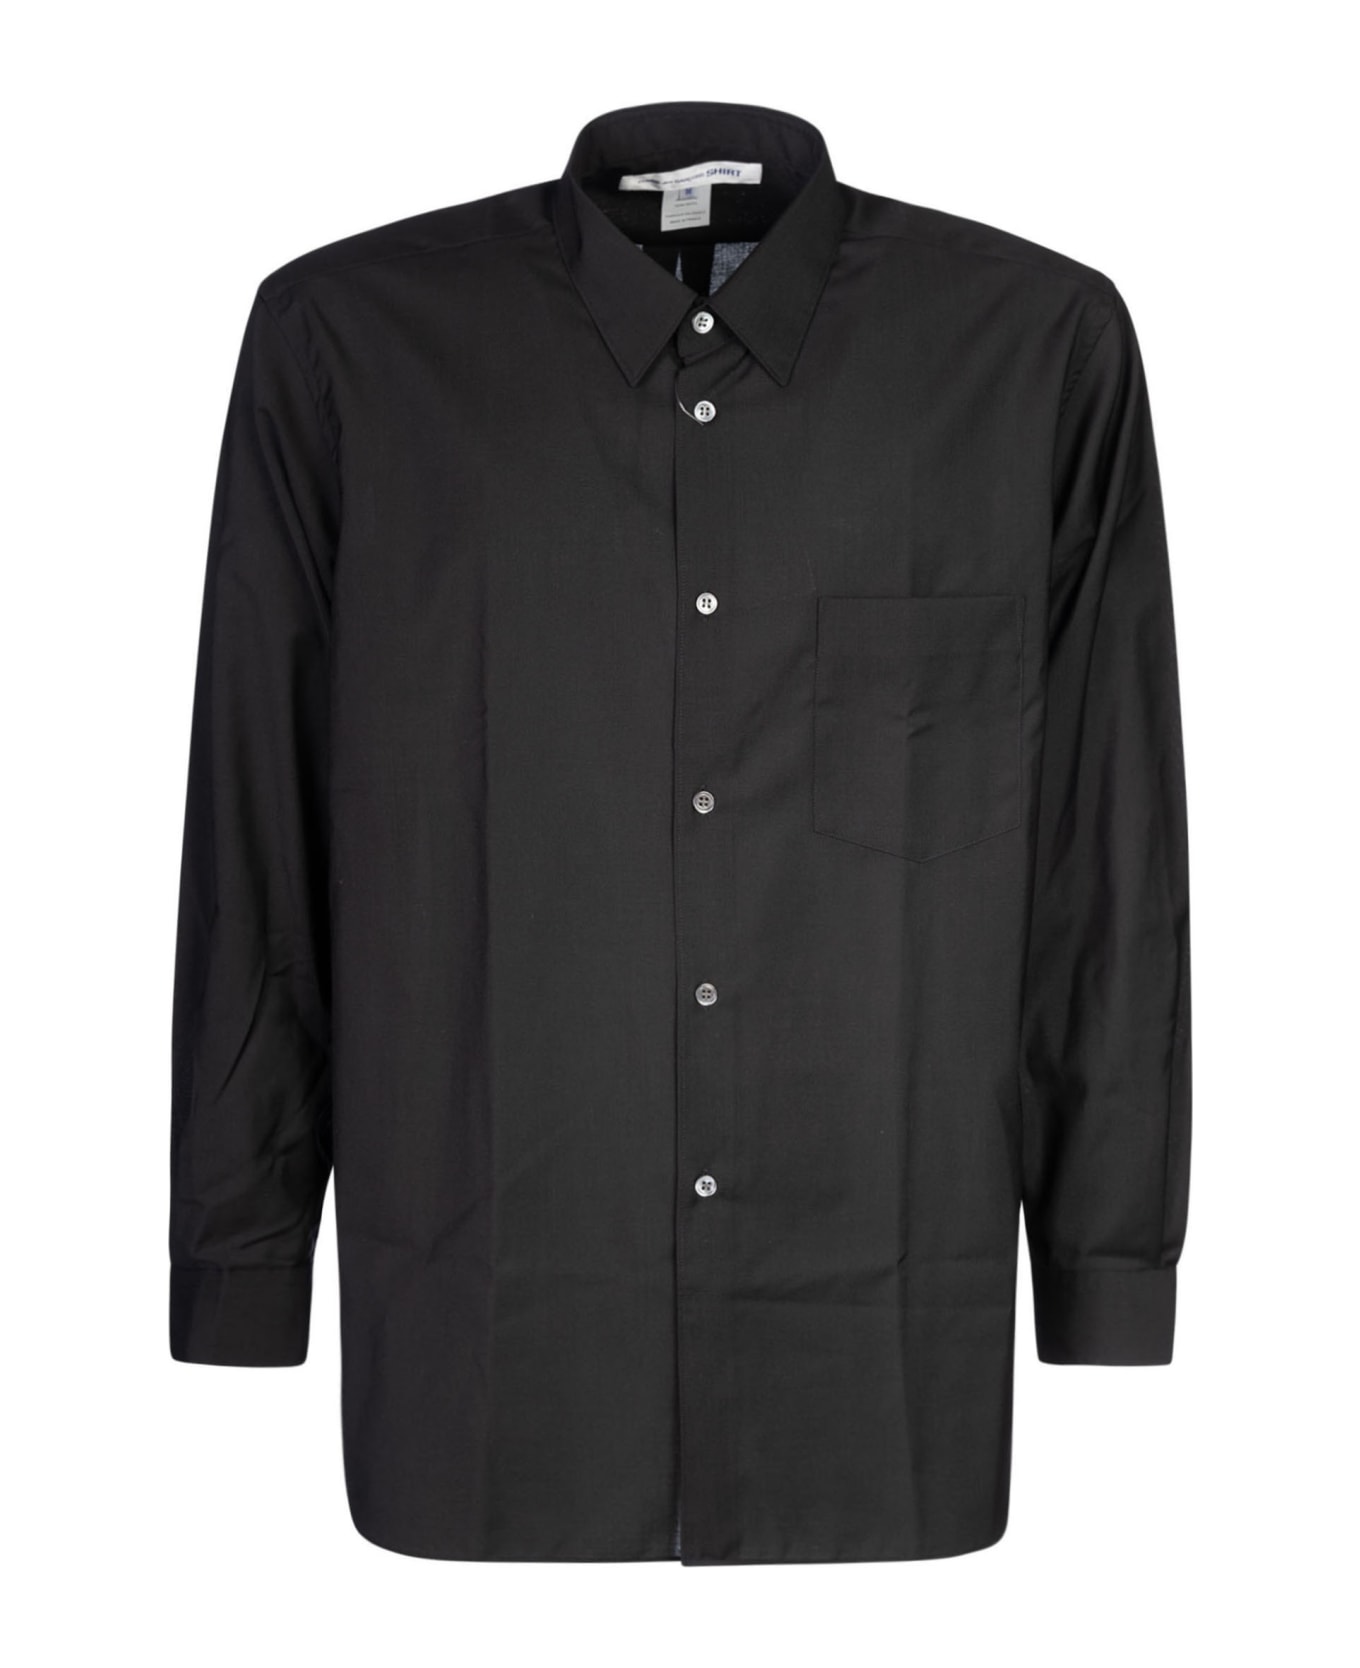 Comme des Garçons Shirt Boy Patched Pocket Plain Shirt - Black シャツ